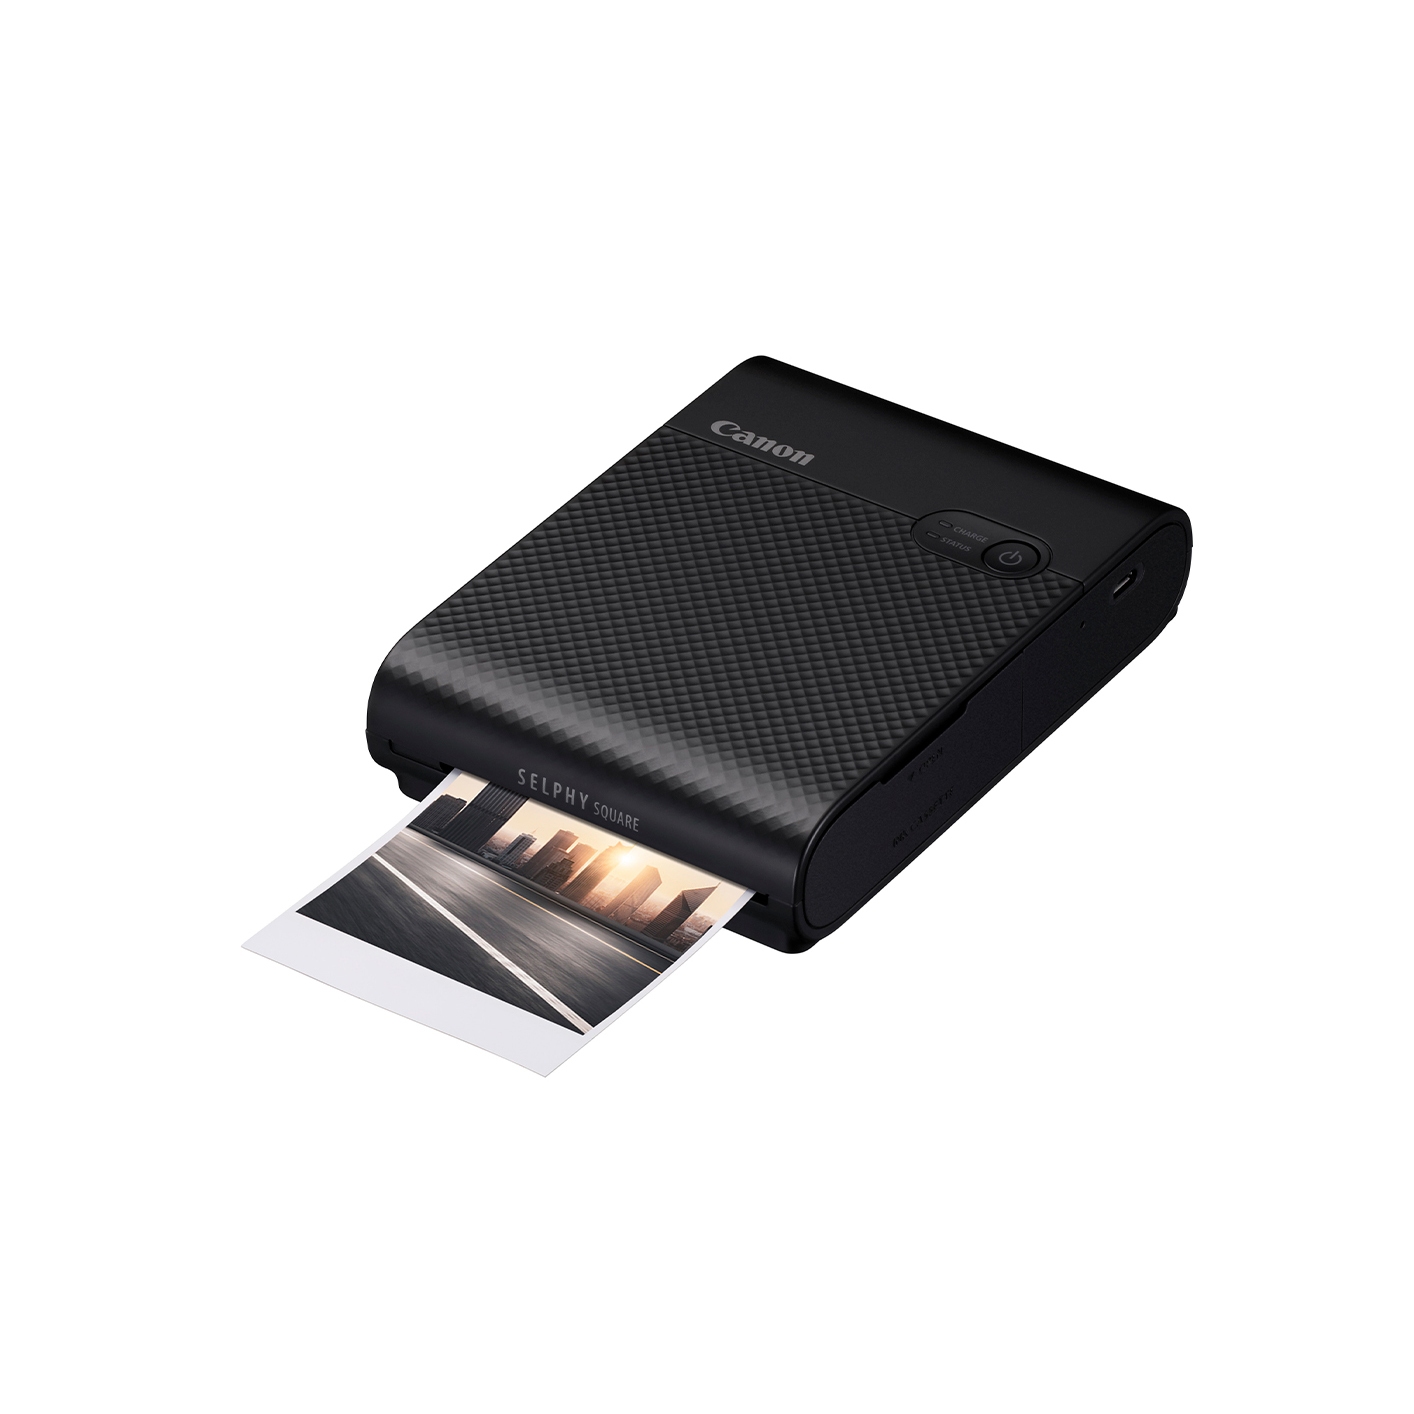 캐논 정품 QX10 컴팩트 포토프린터 (Black)